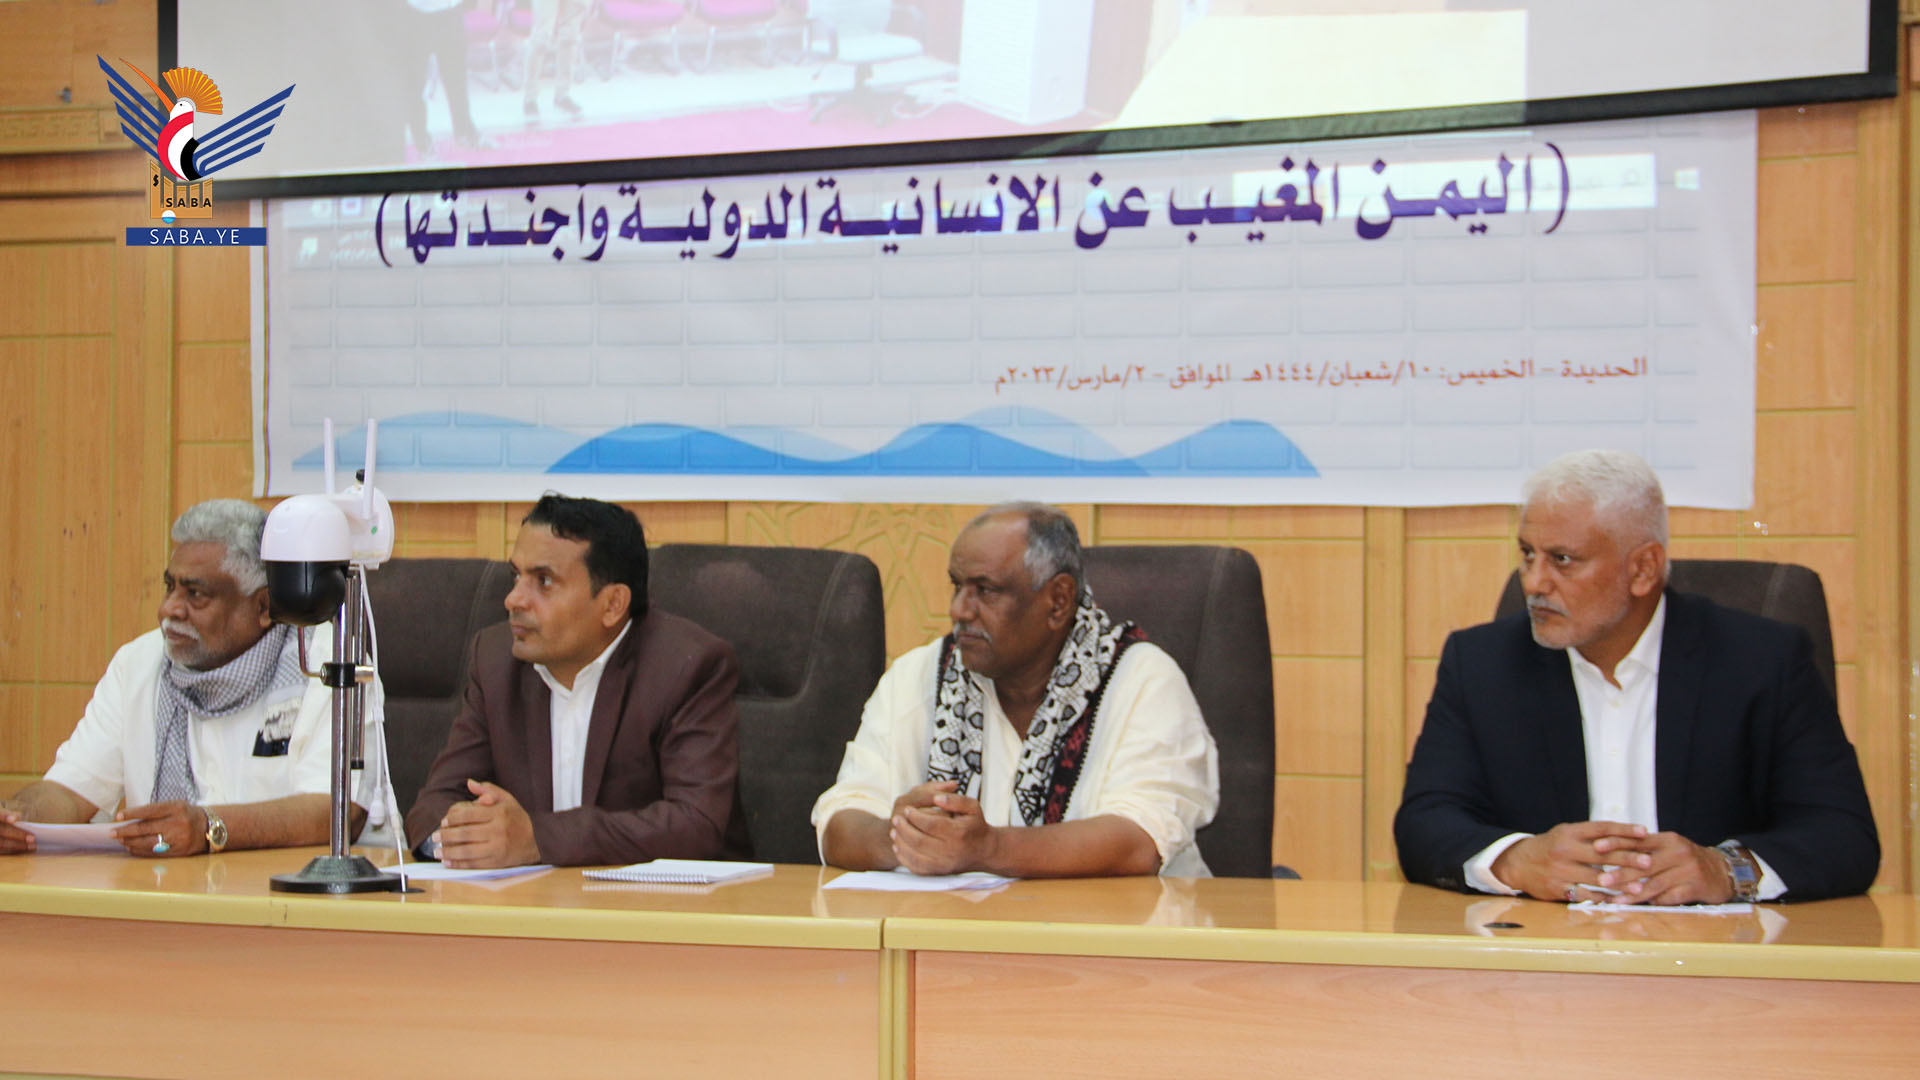 ندوة في الحديدة بعنوان "اليمن المغيب عن الإنسانية الدولية وأجندتها"